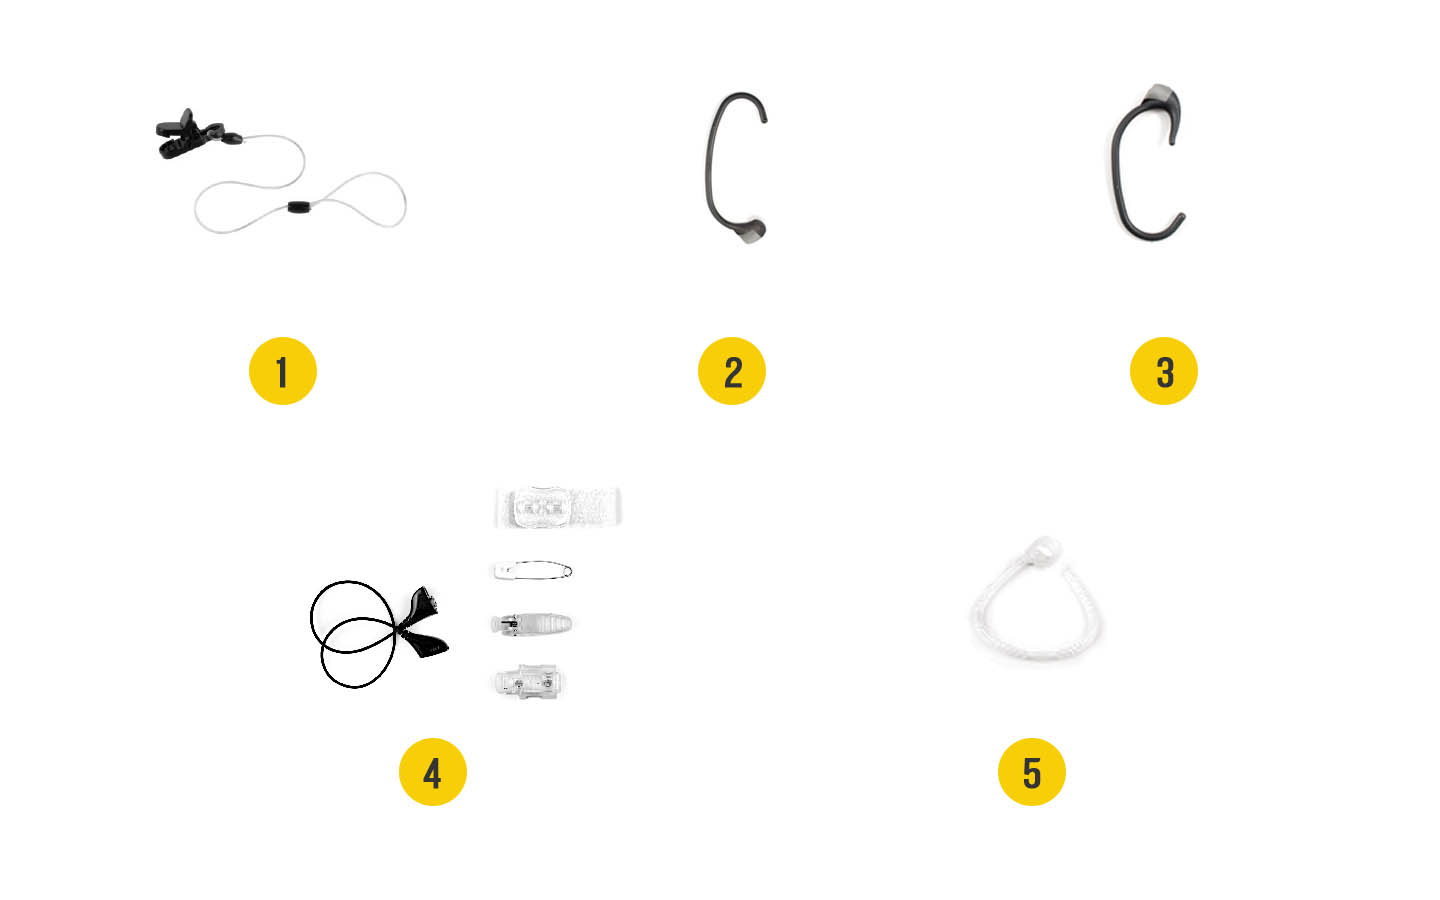 Imaginea accesoriilor pentru procesorul de sunet Baha: 1. Clemă cu fir de siguranță lung, 2. Cârlig auricular+, 3. Snugfit, 4. Litewear, 5. Mic Lock